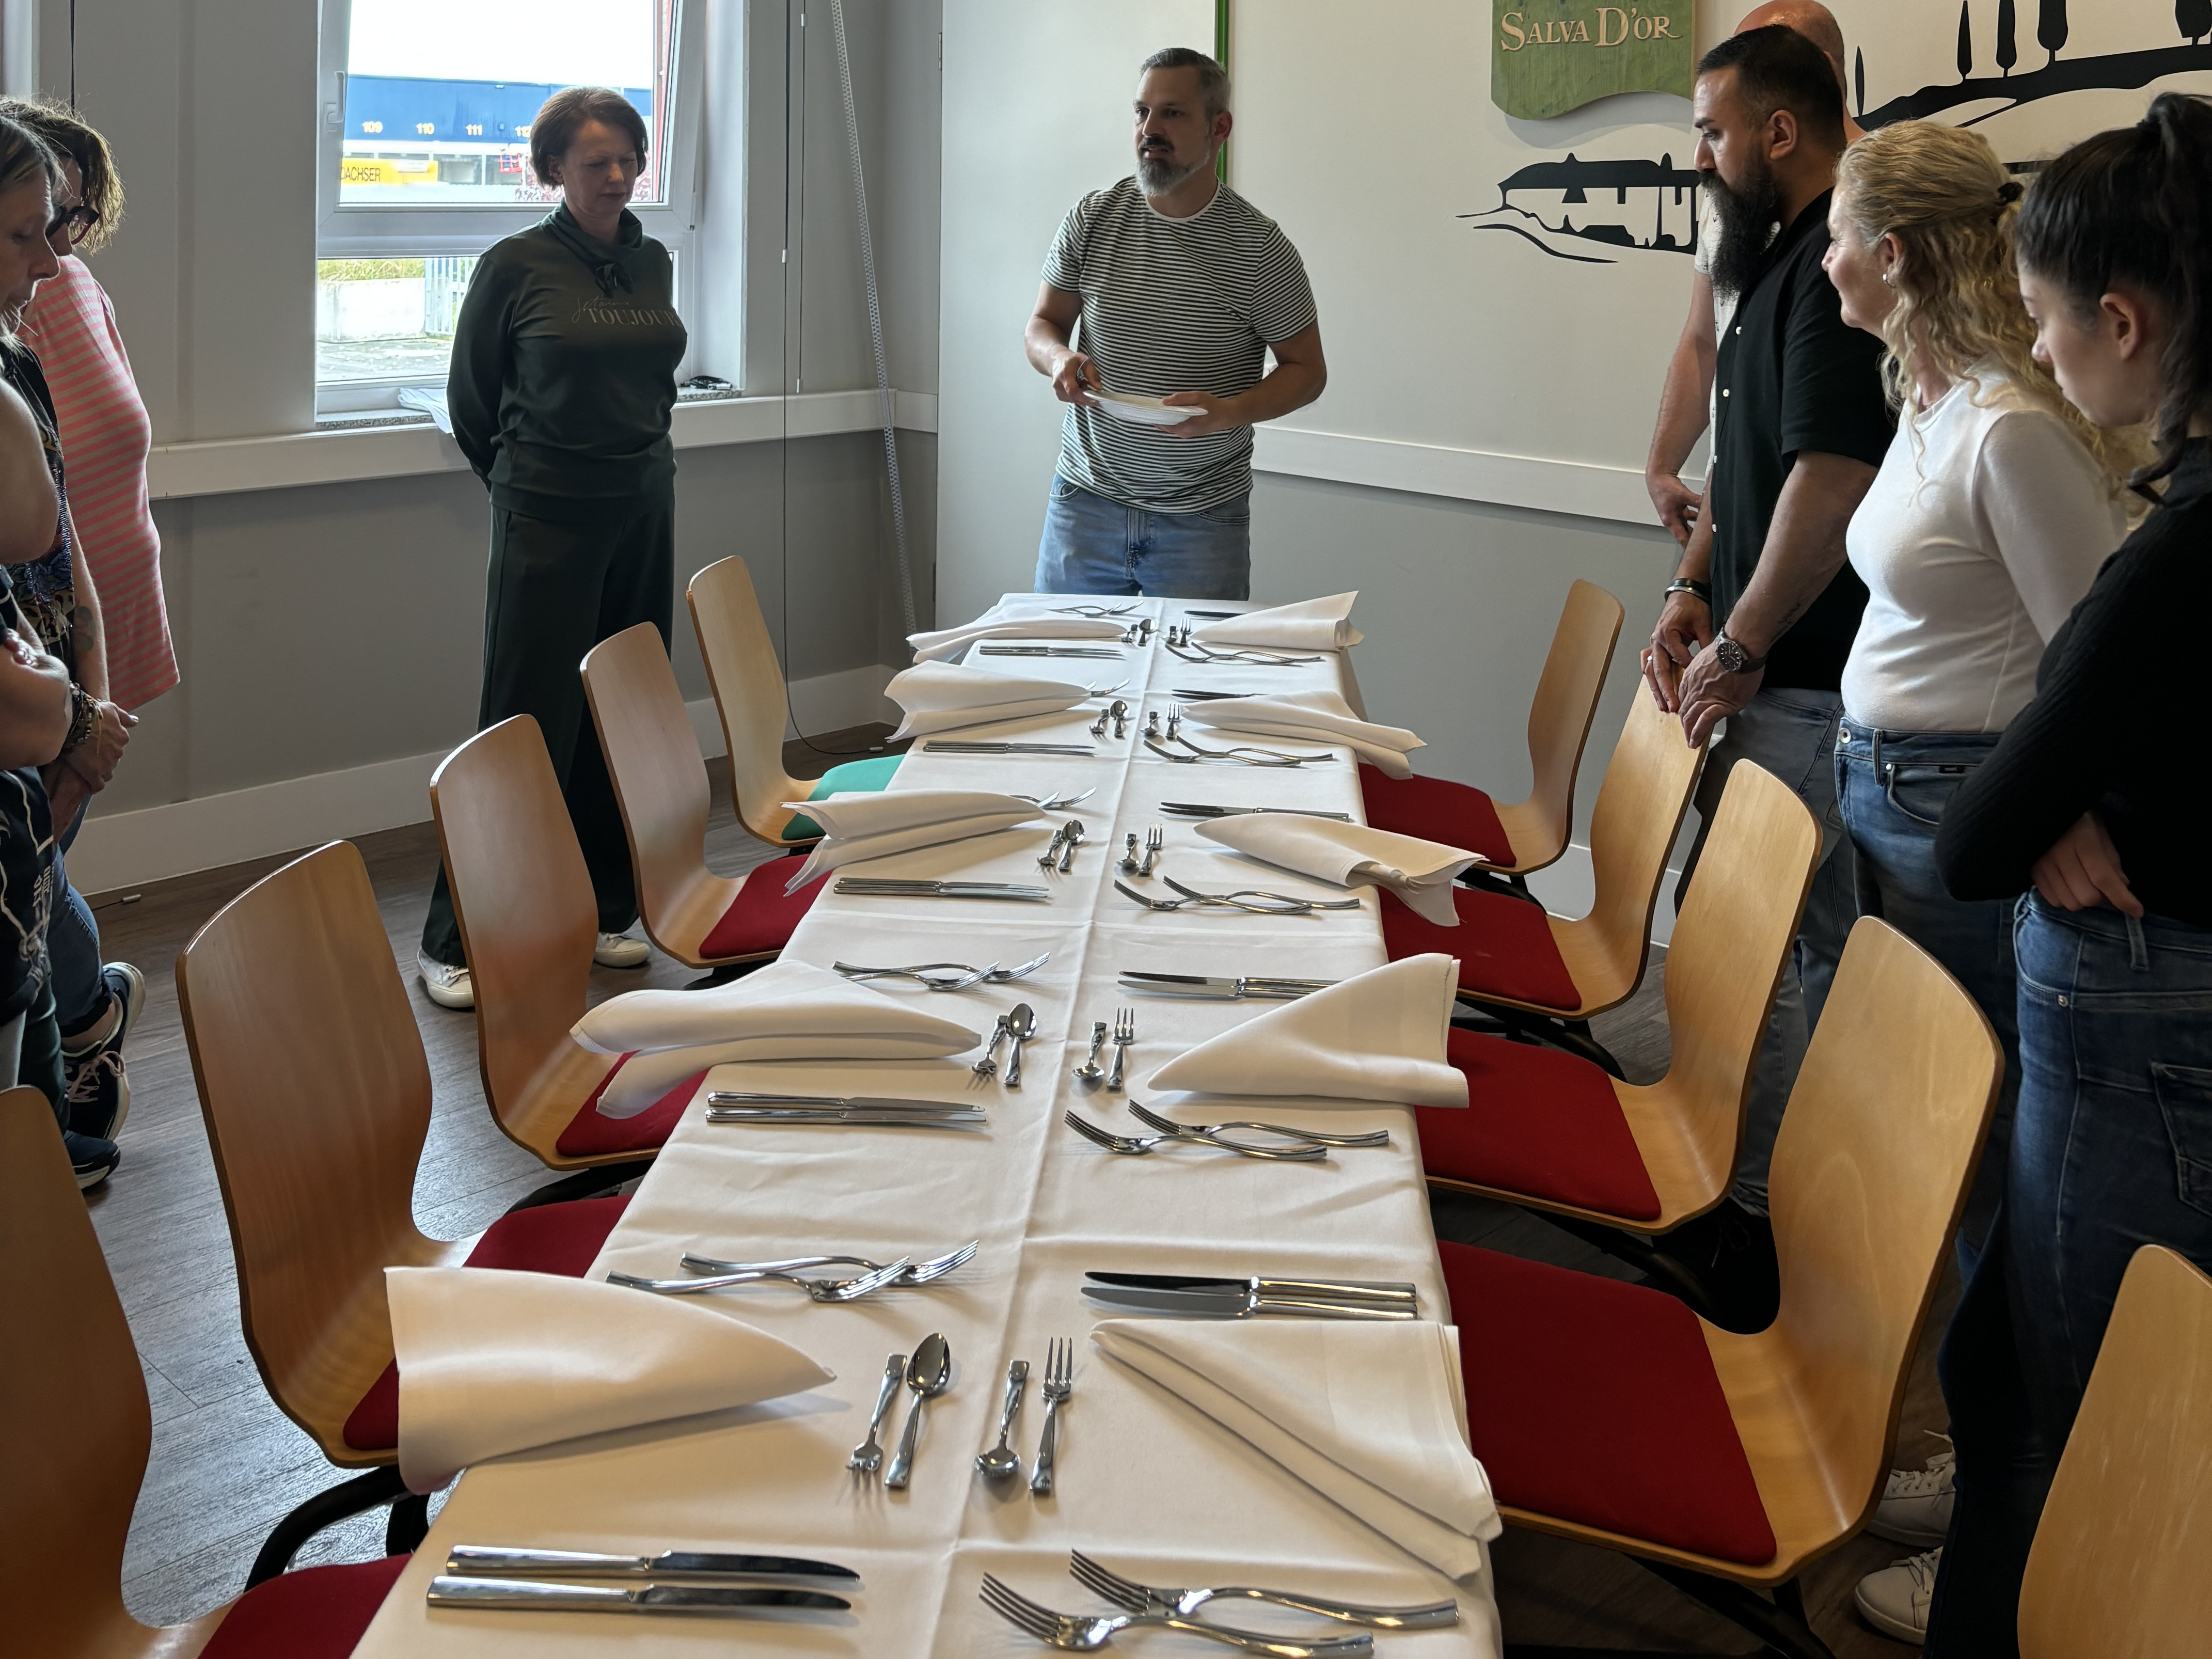 Workshop-Teilnehmer lernen Tische eindecken